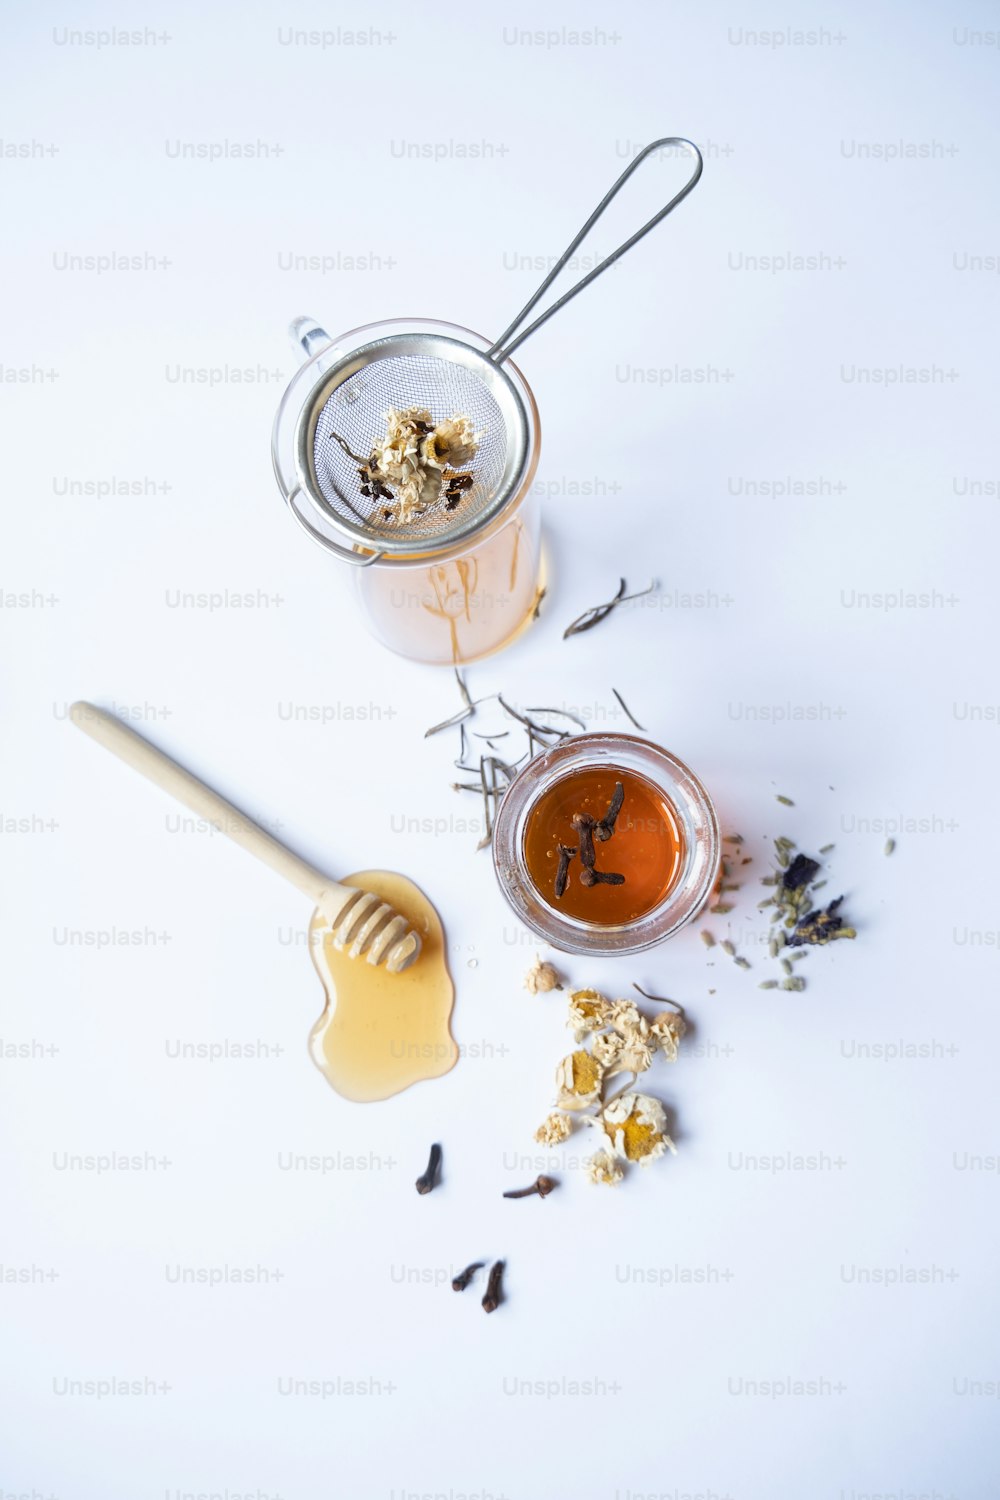 un frasco de miel y una cucharada de miel sobre una superficie blanca